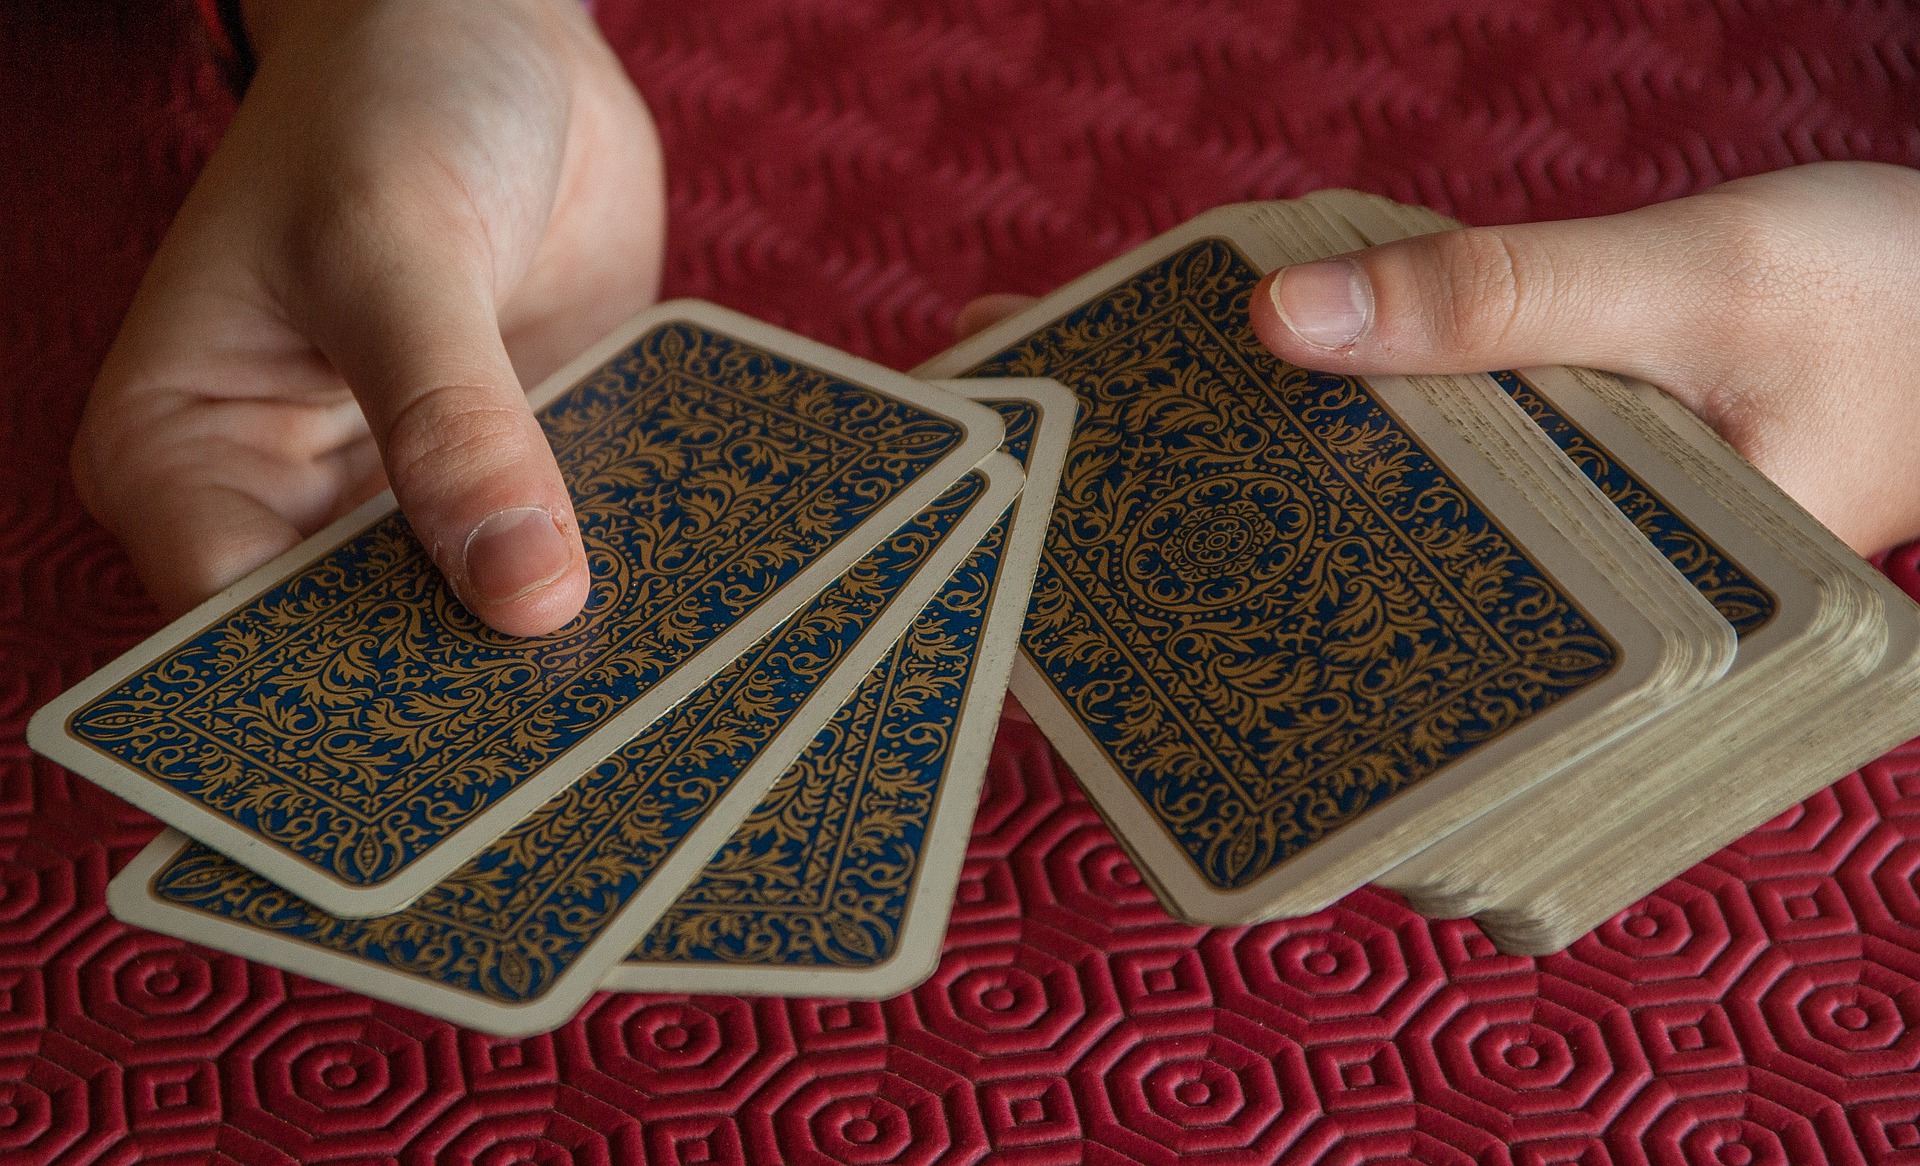 Encima de un tapete rojo unas manos reparten cartas de una baraja